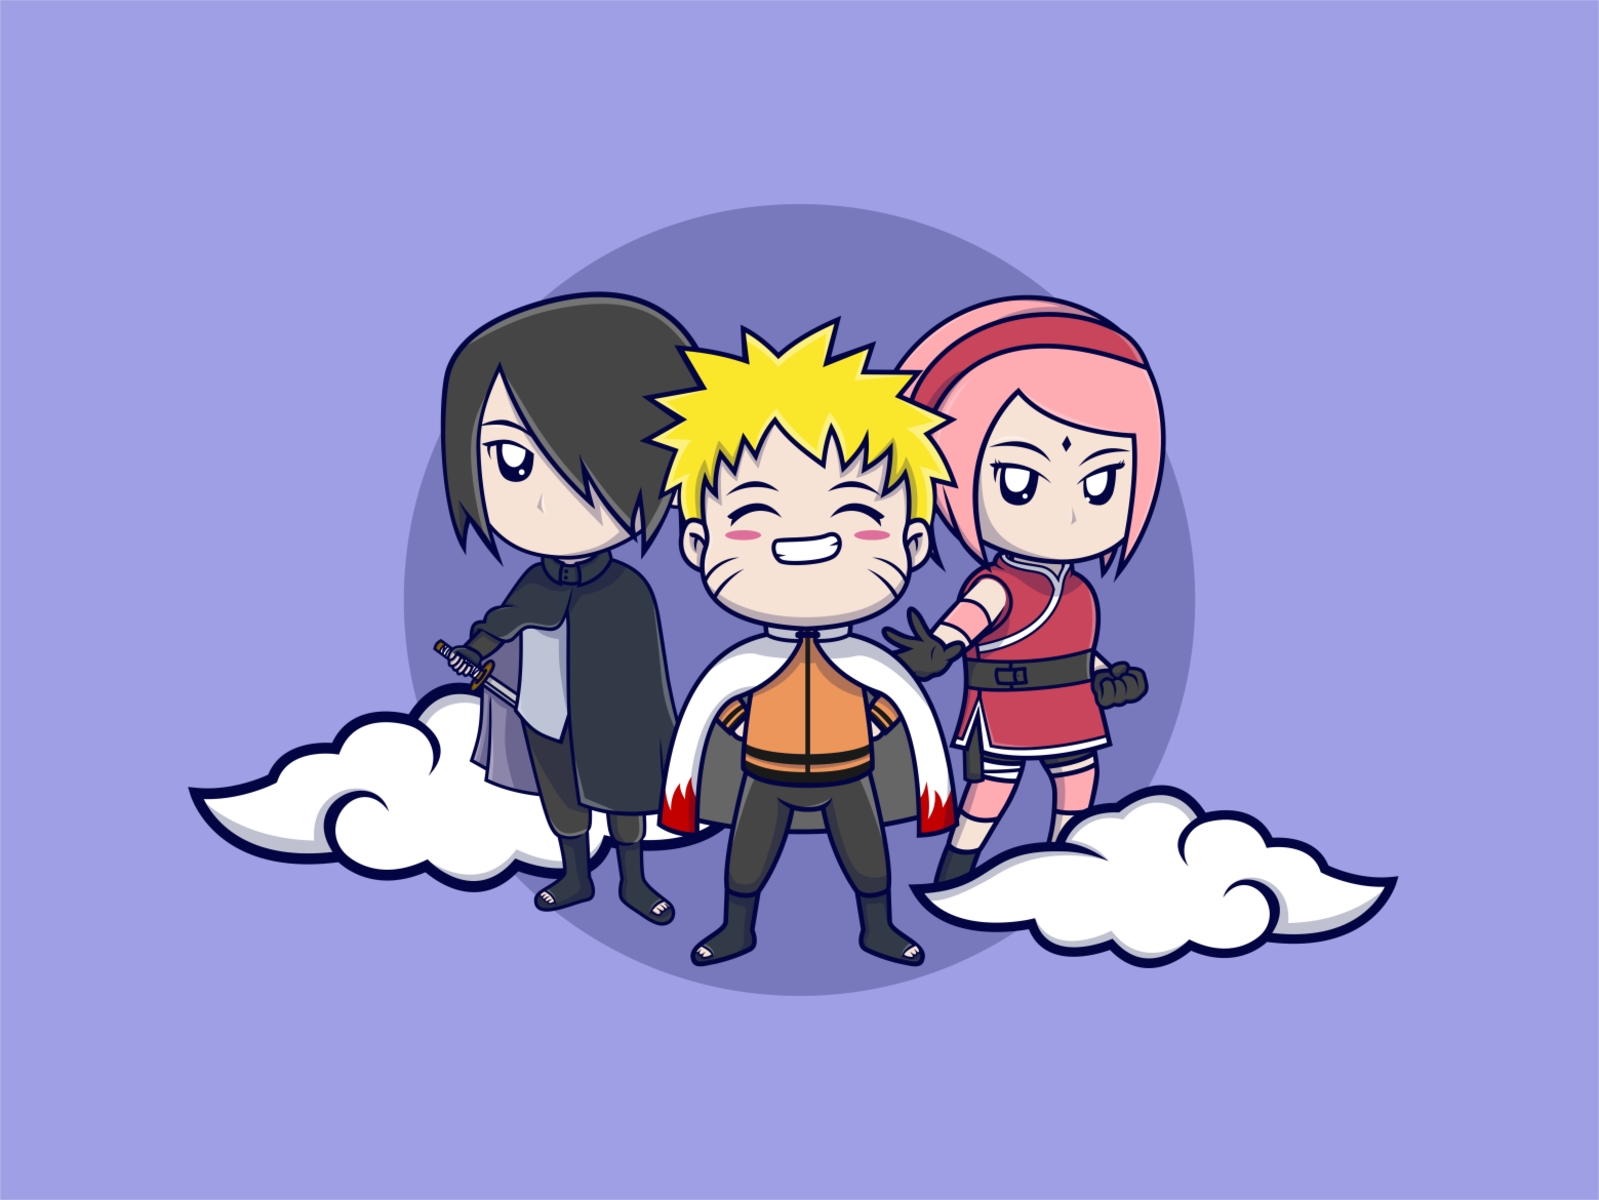 Bandai Anime Heroes Naruto 6.5